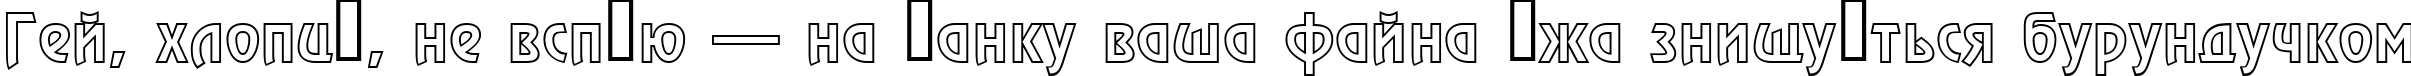 Пример написания шрифтом a_RewinderOtl текста на украинском